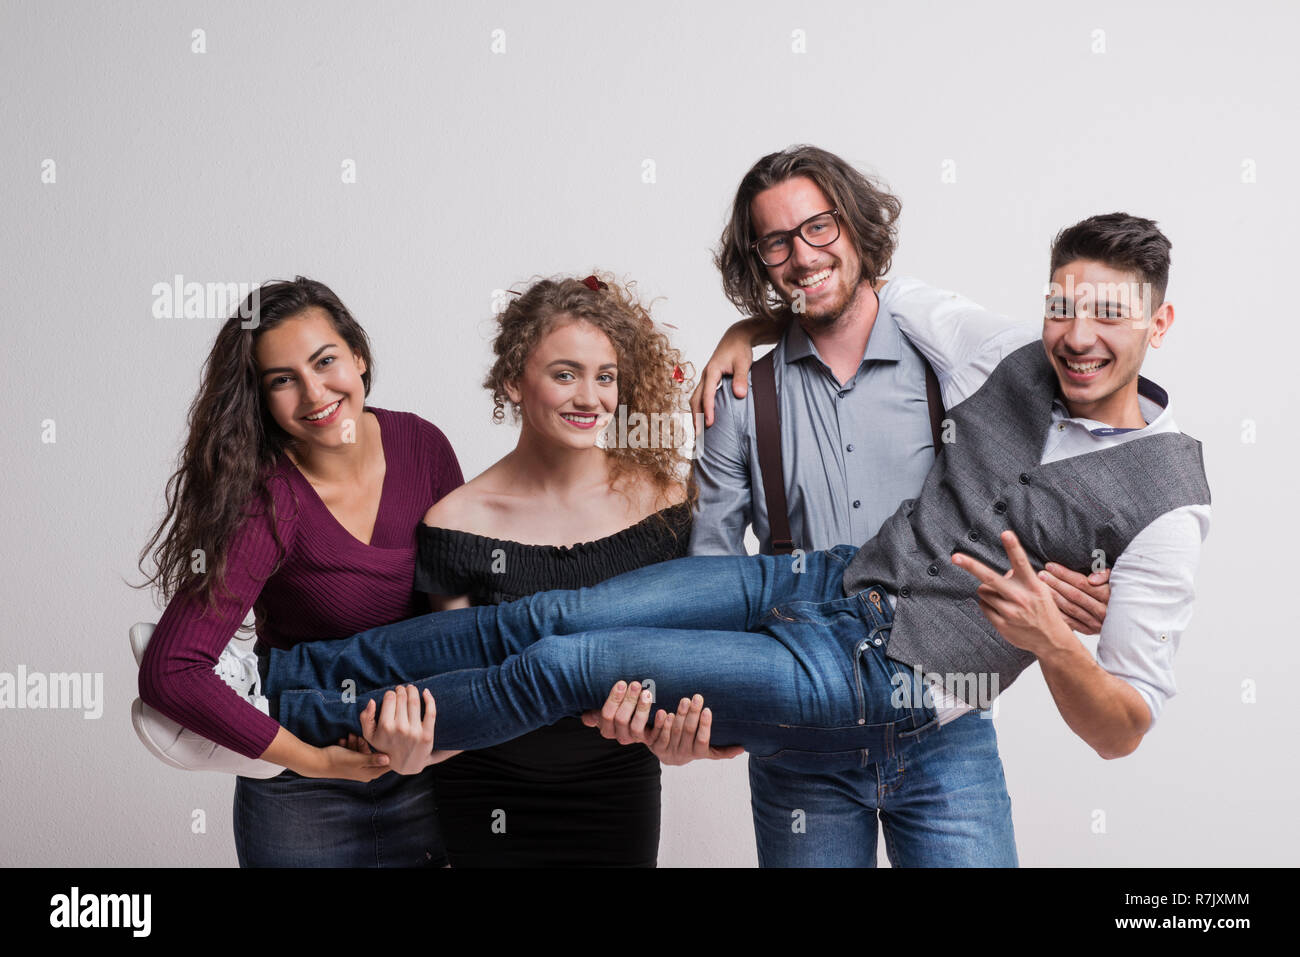 Eine Gruppe von jungen Menschen mit einem Freund in einem Studio, genießen eine Partei. Stockfoto